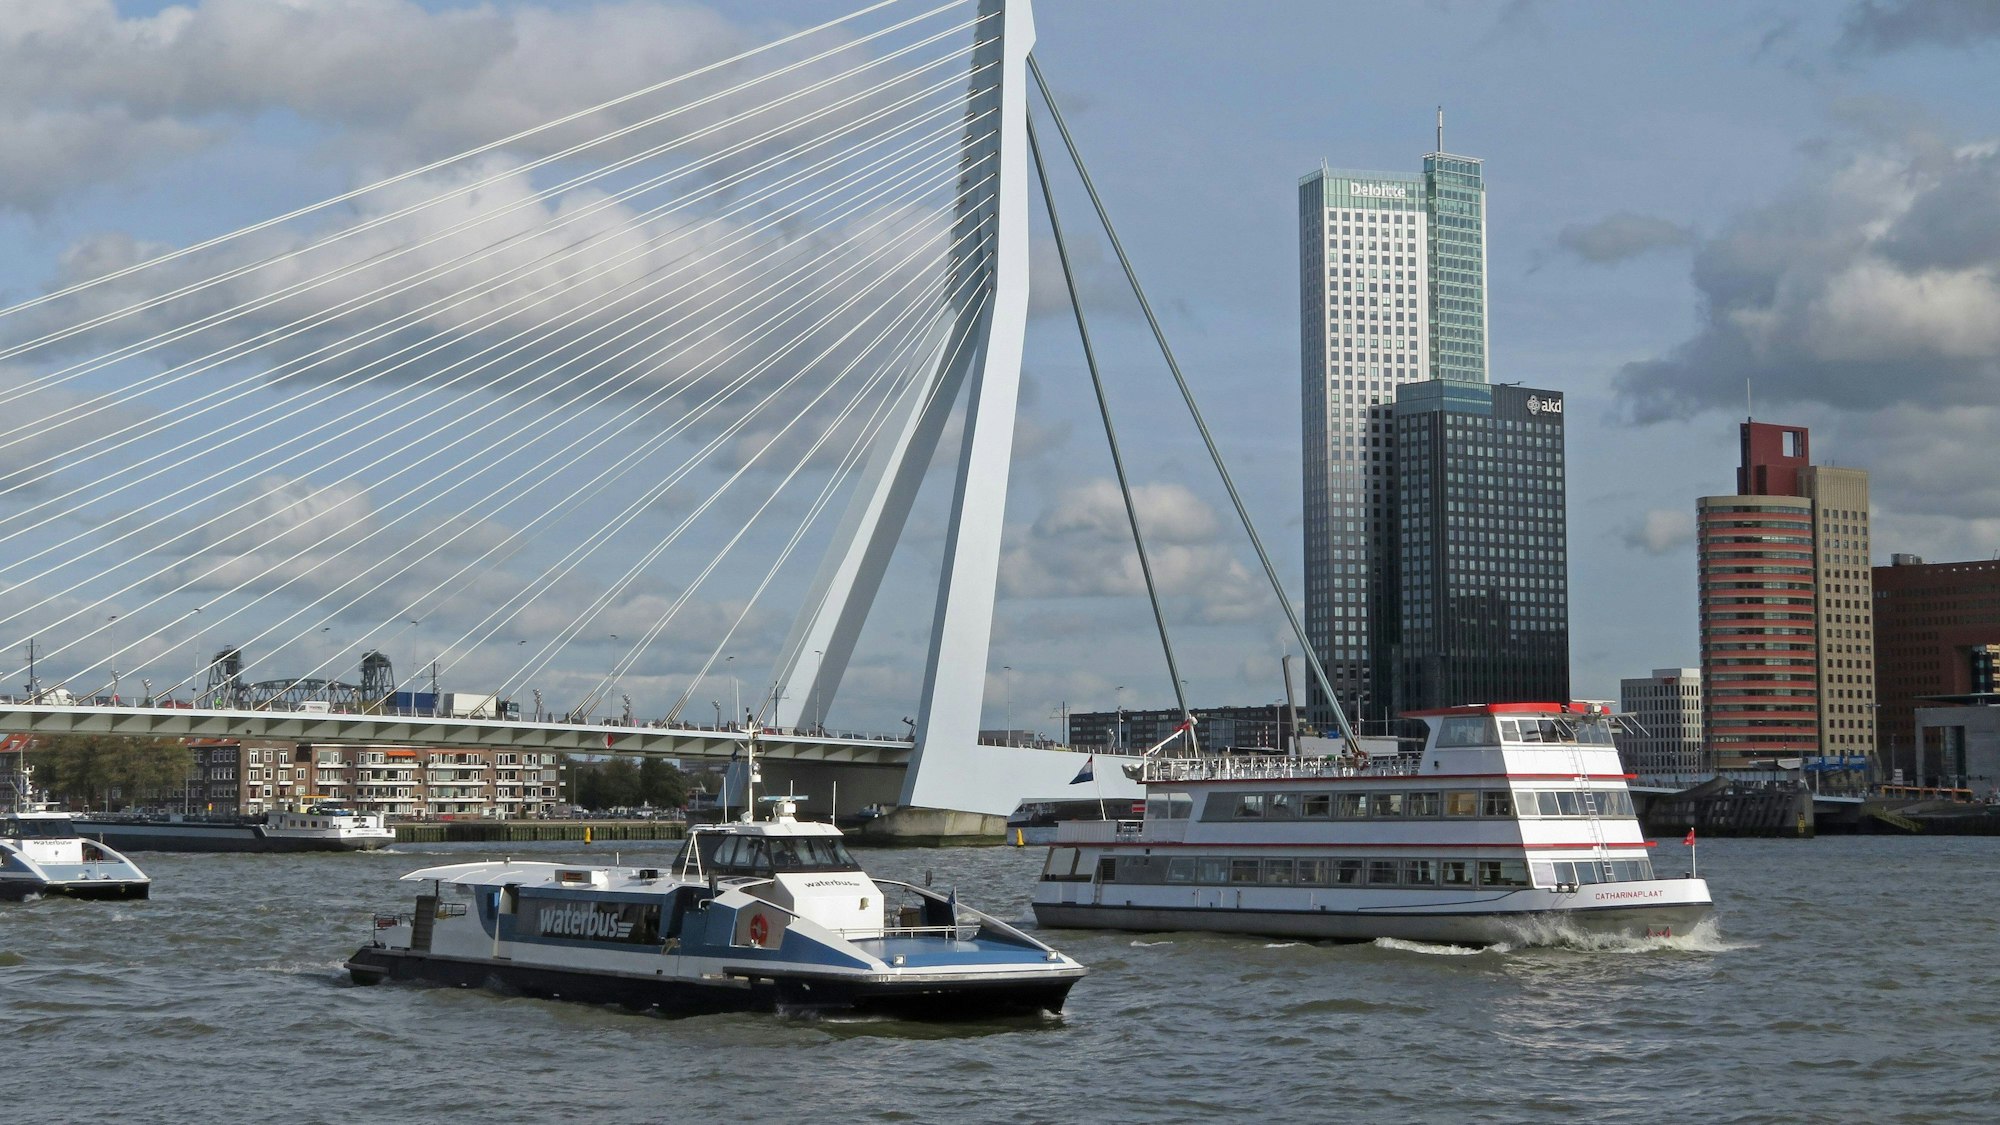 Das Bild zeigt unter anderem einen Wasserbus vor der Erasmus-Brücke in Rotterdam, dahinter sind Häuser zu sehen.